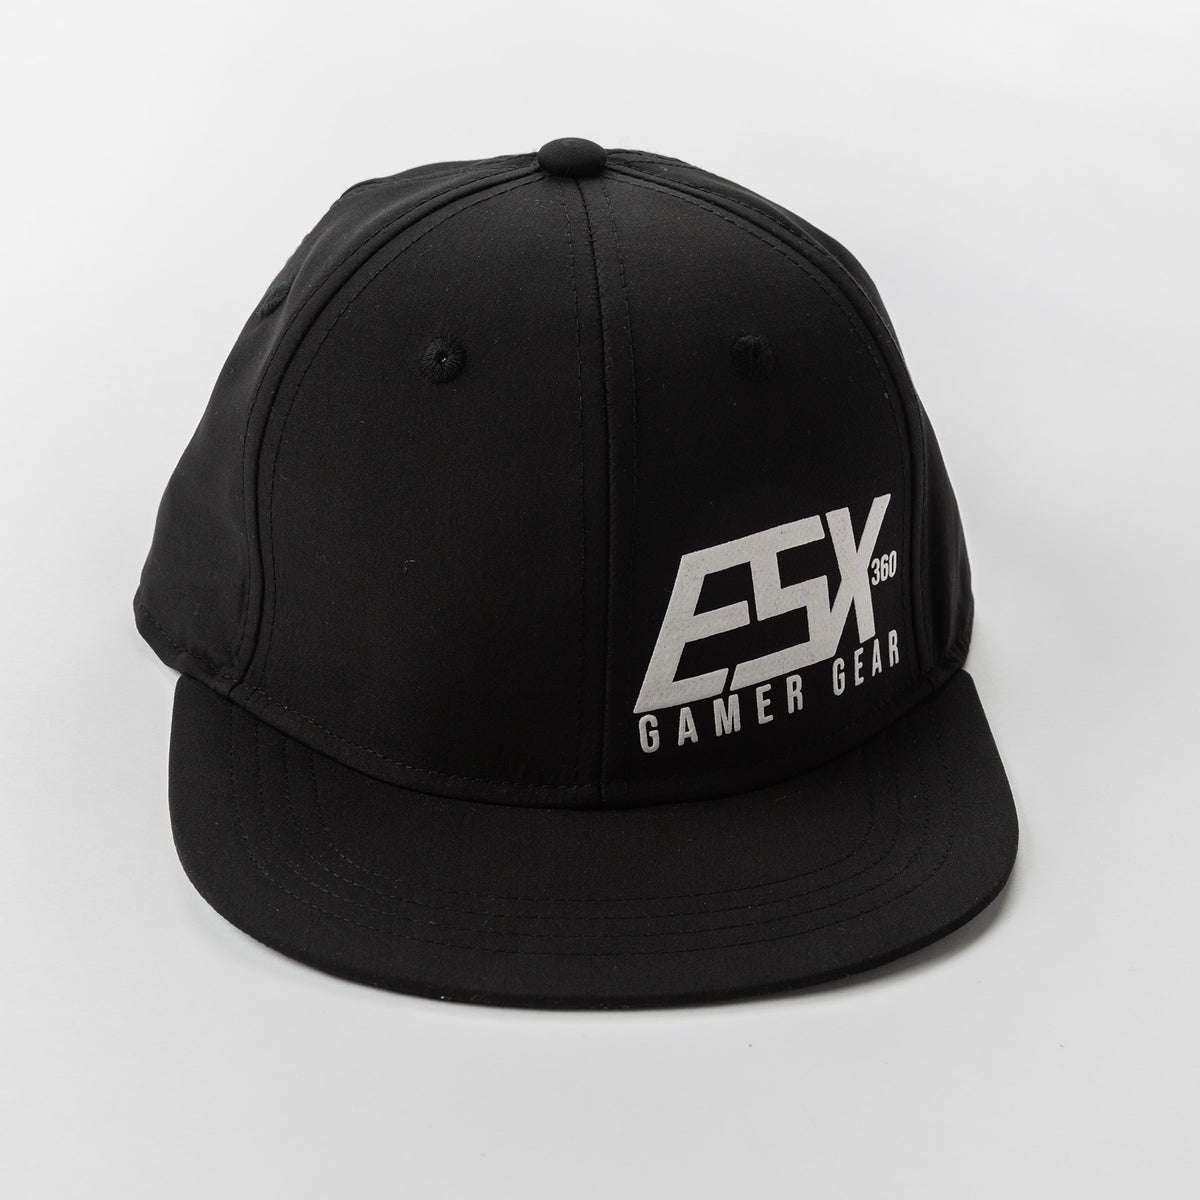 Black Gamer Hat | ESX 360 – ESX360 | Gaming Apparel